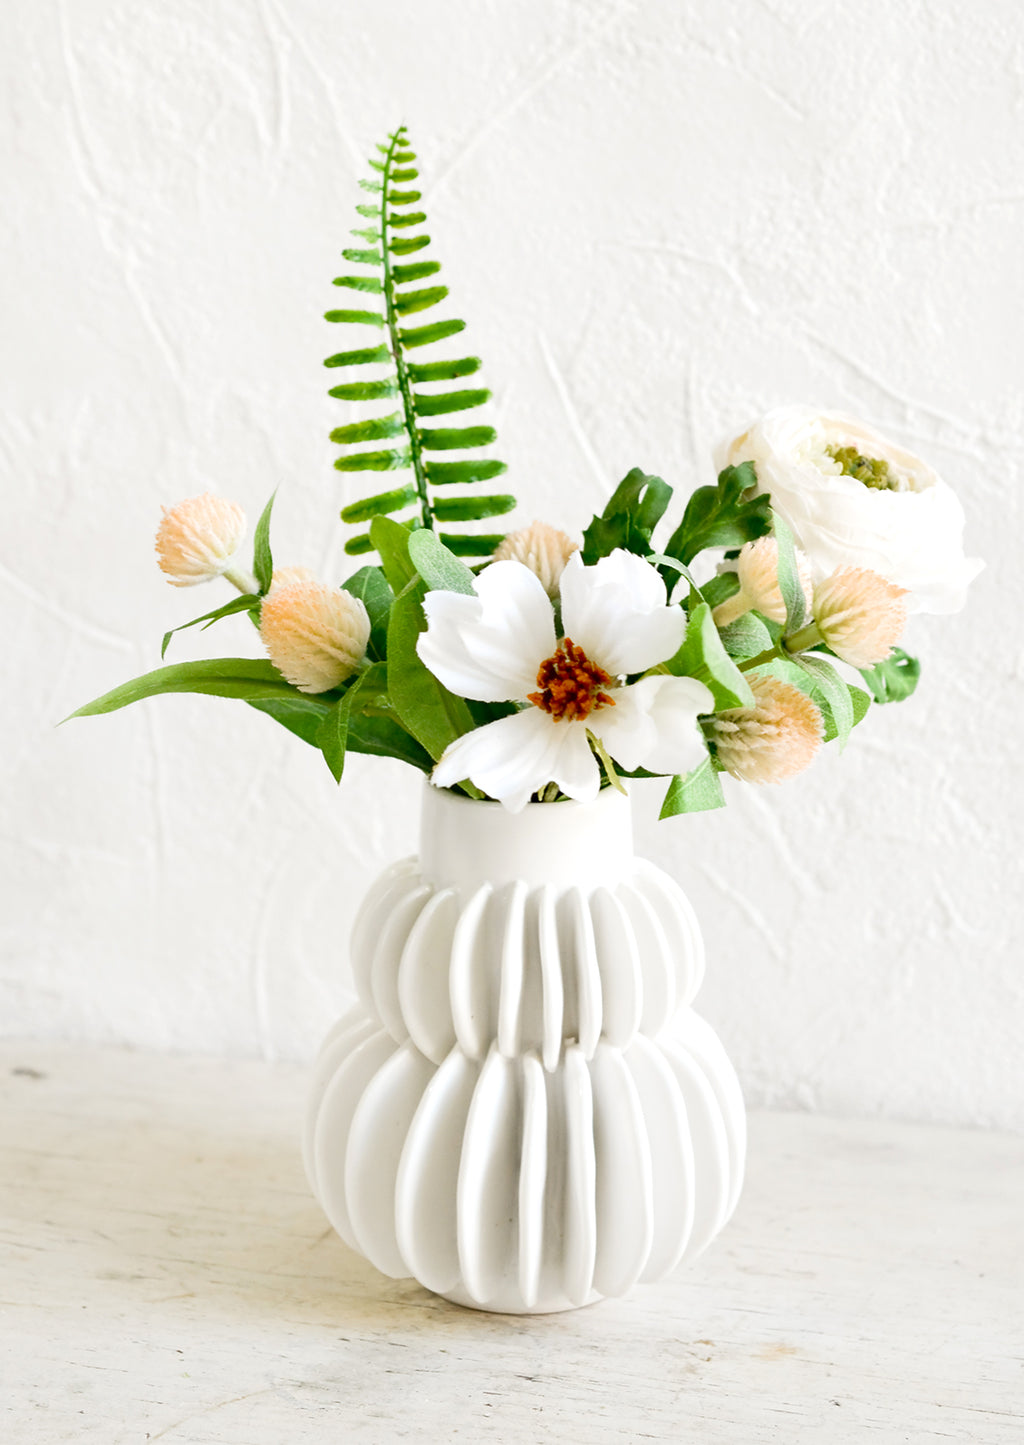 2: Tableau Ceramic Vase